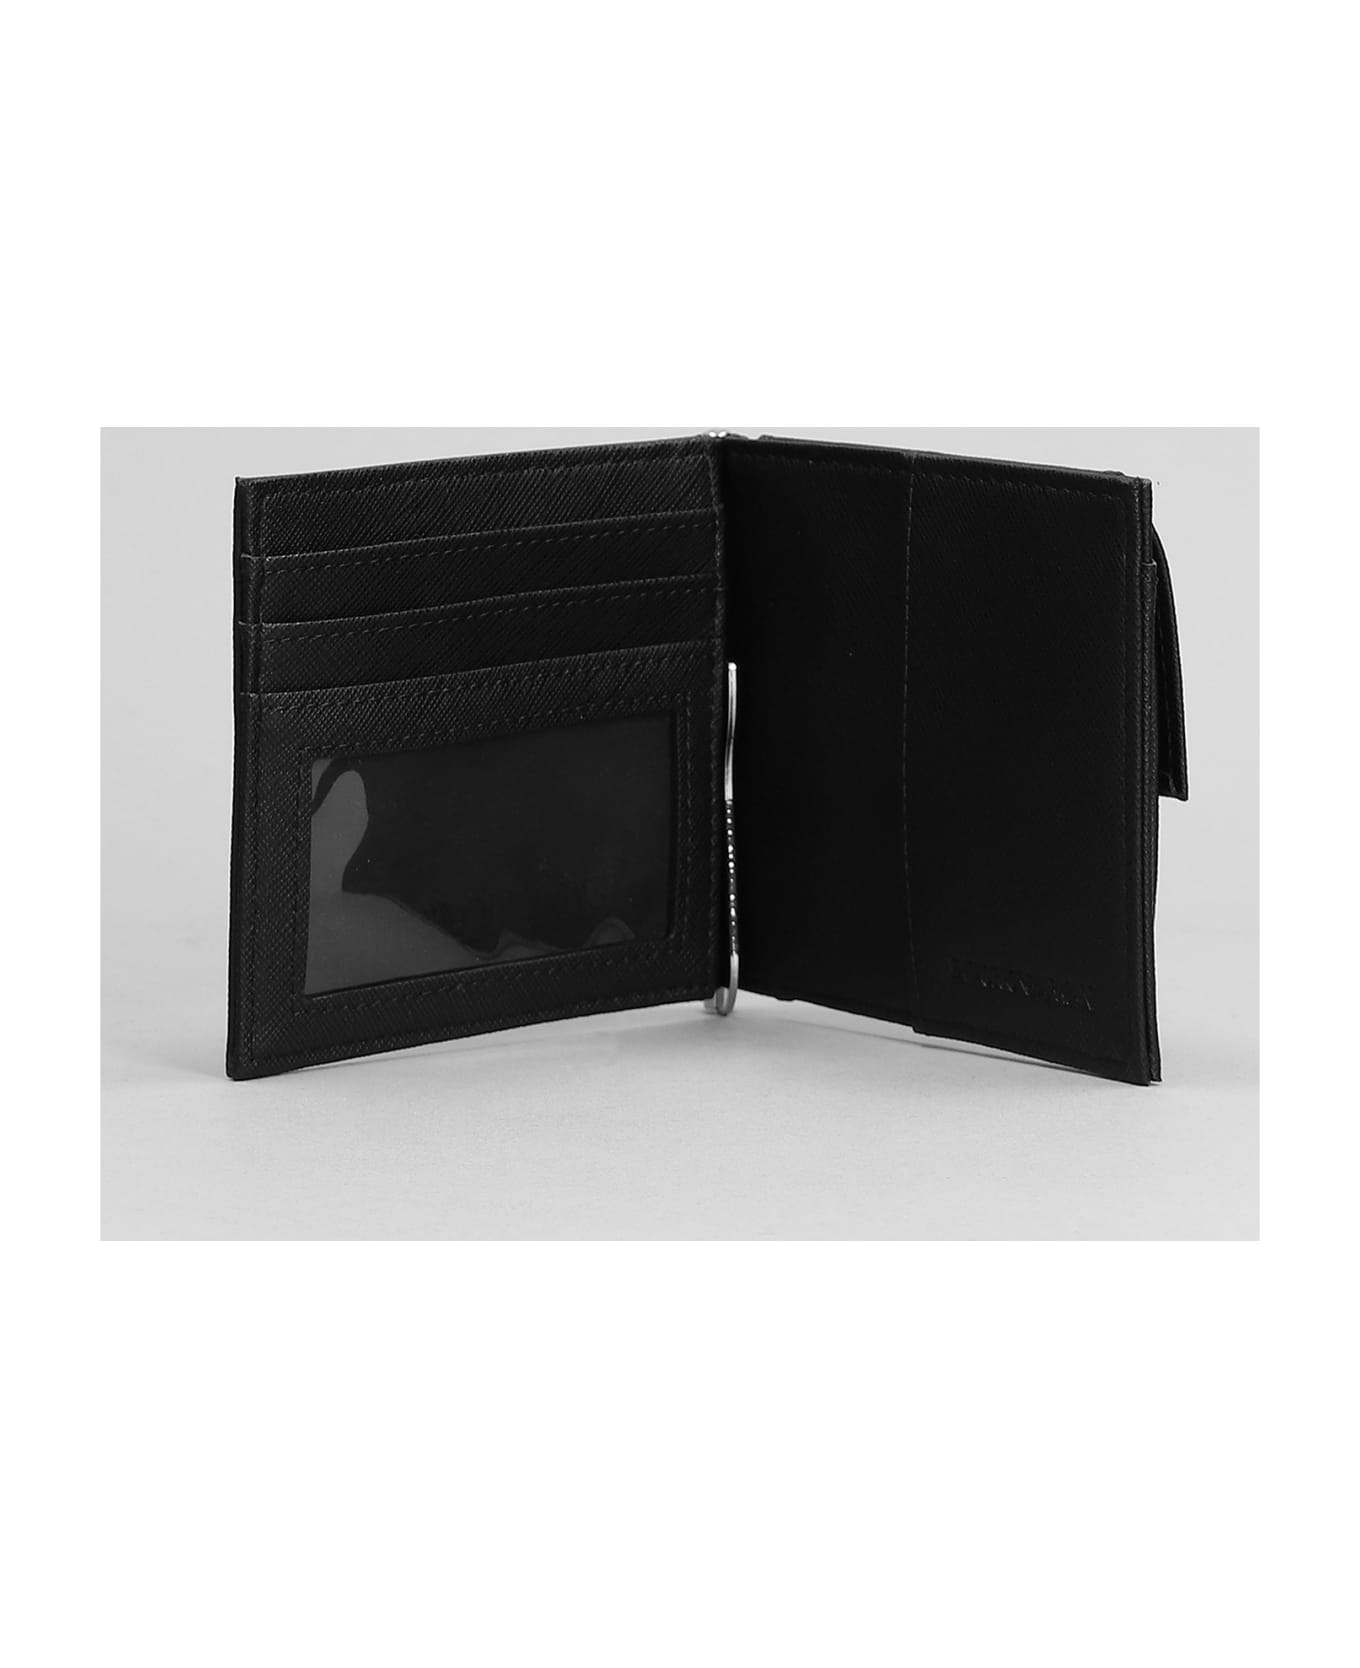 Emporio Armani Wallet In Black Polyamide - Black